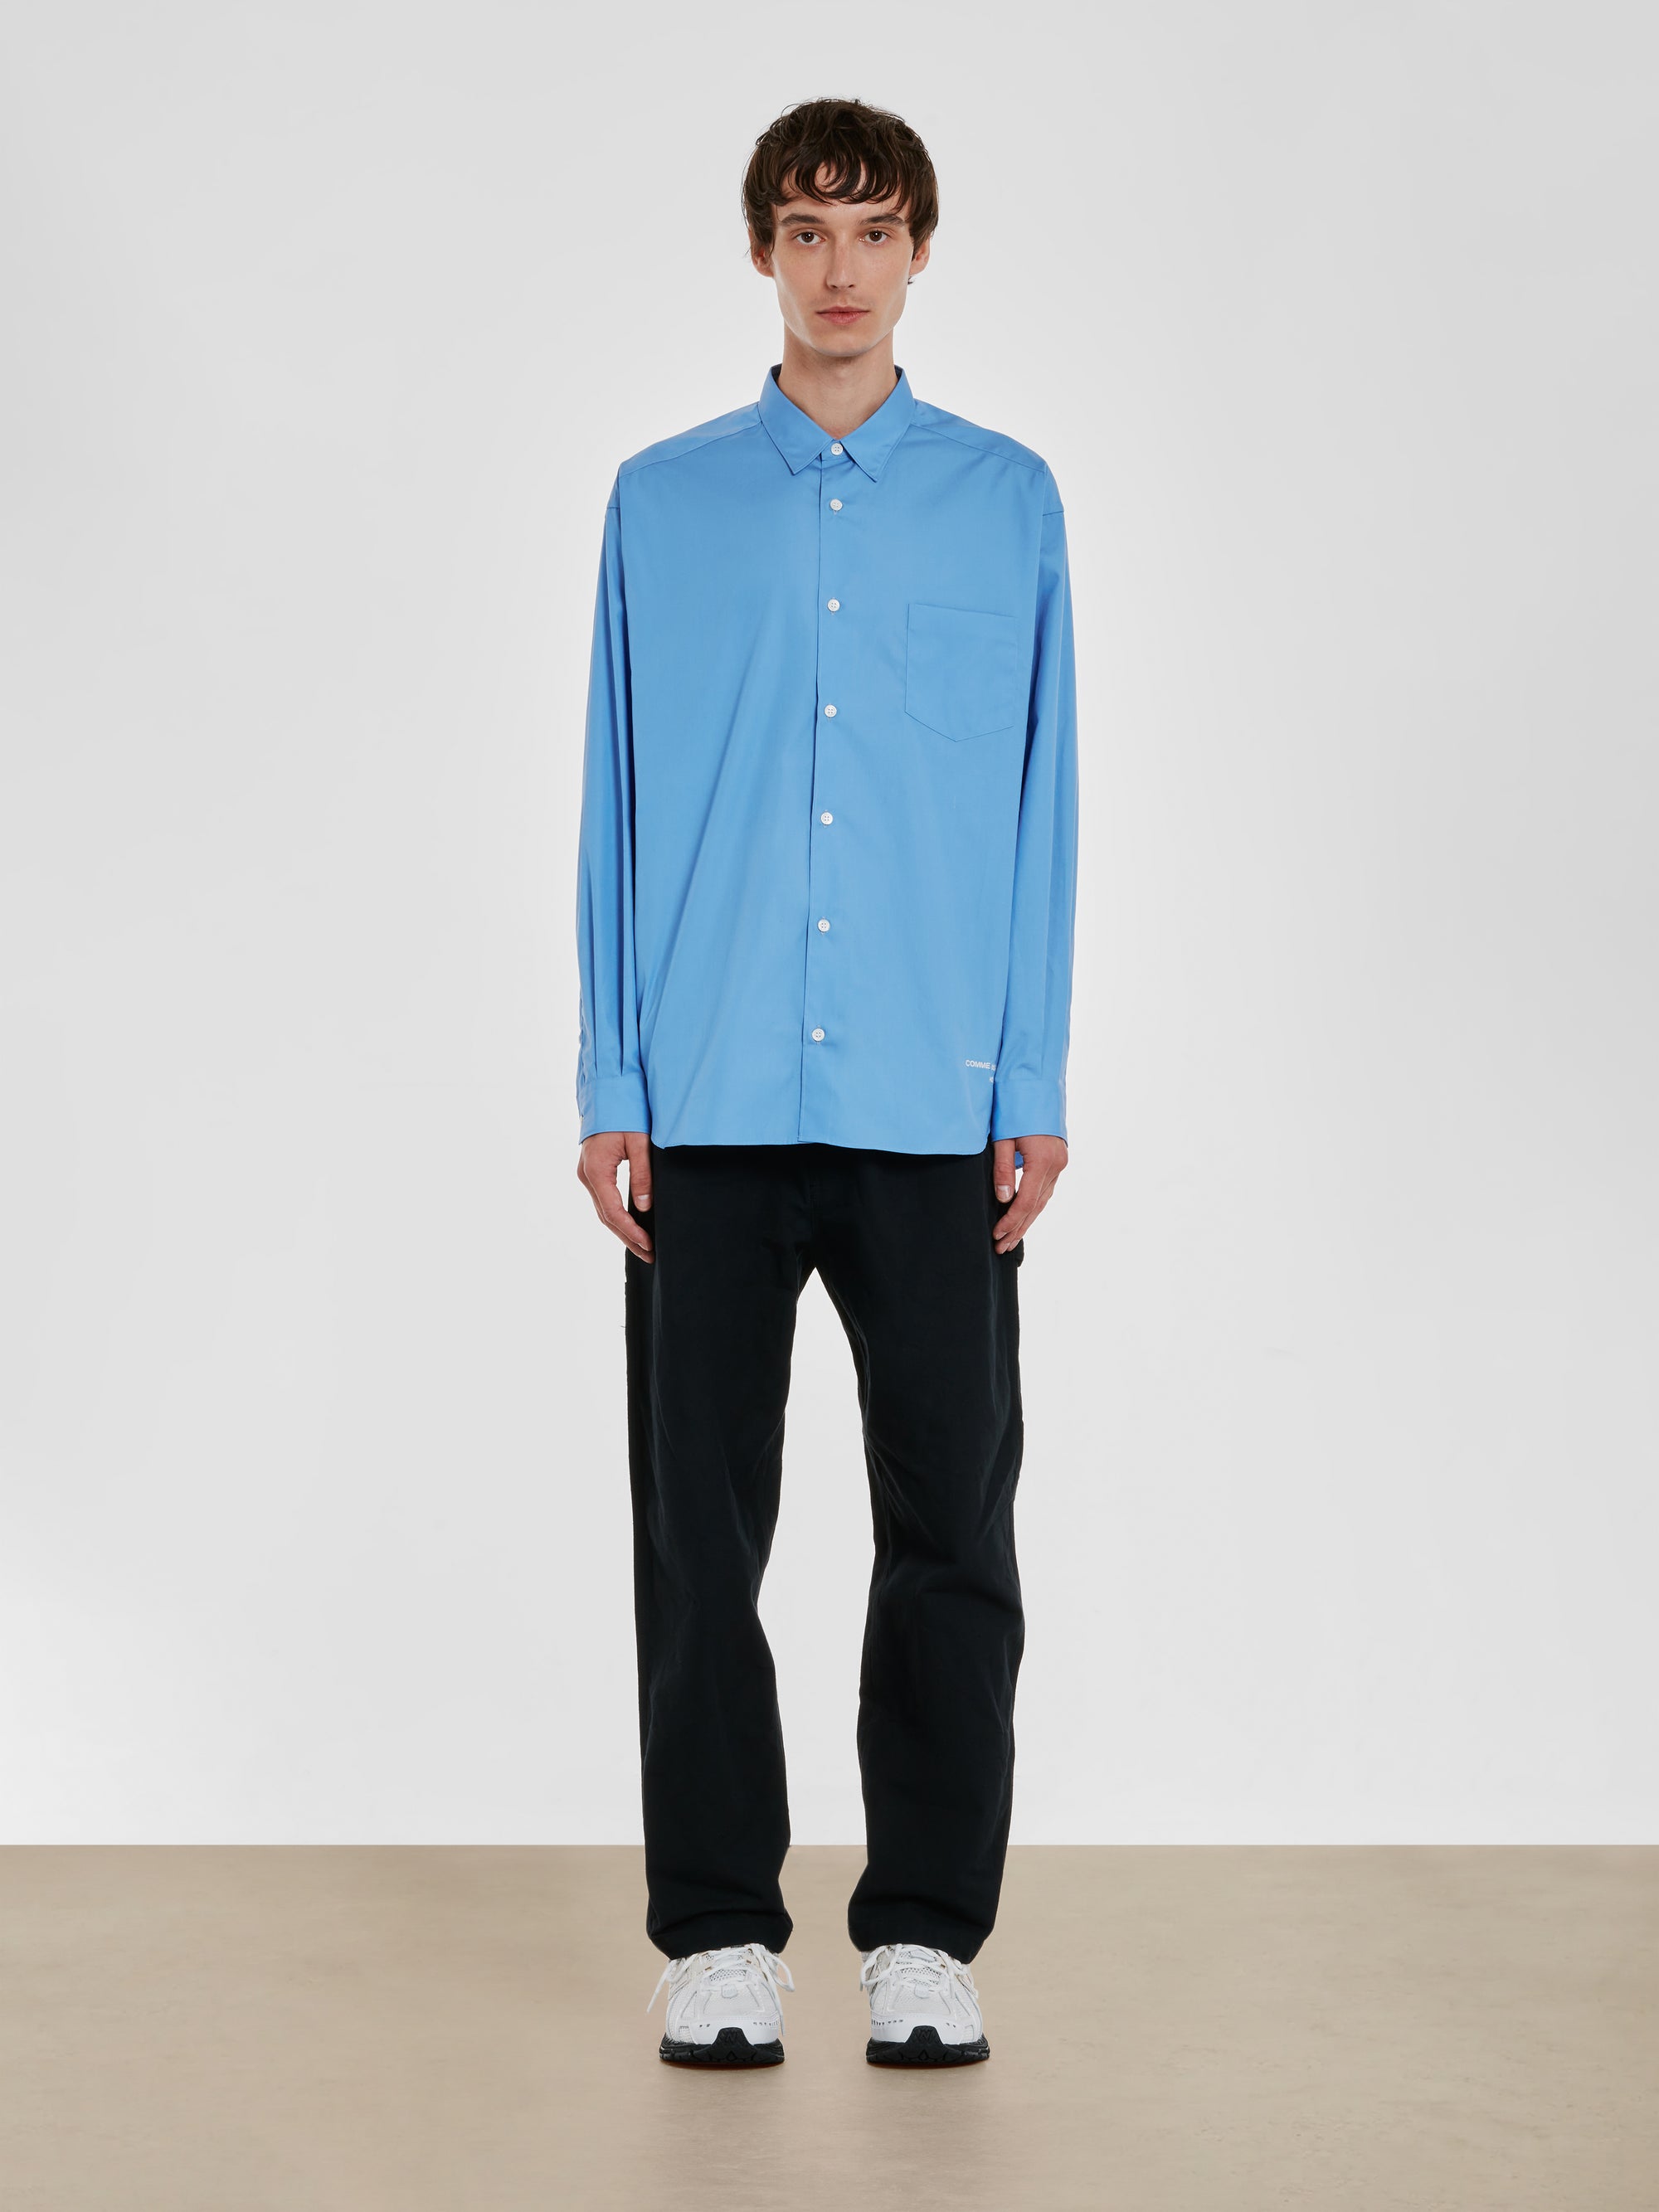 Comme des Garçons Homme - Men’s Cotton Shirt - (Light Blue) view 4